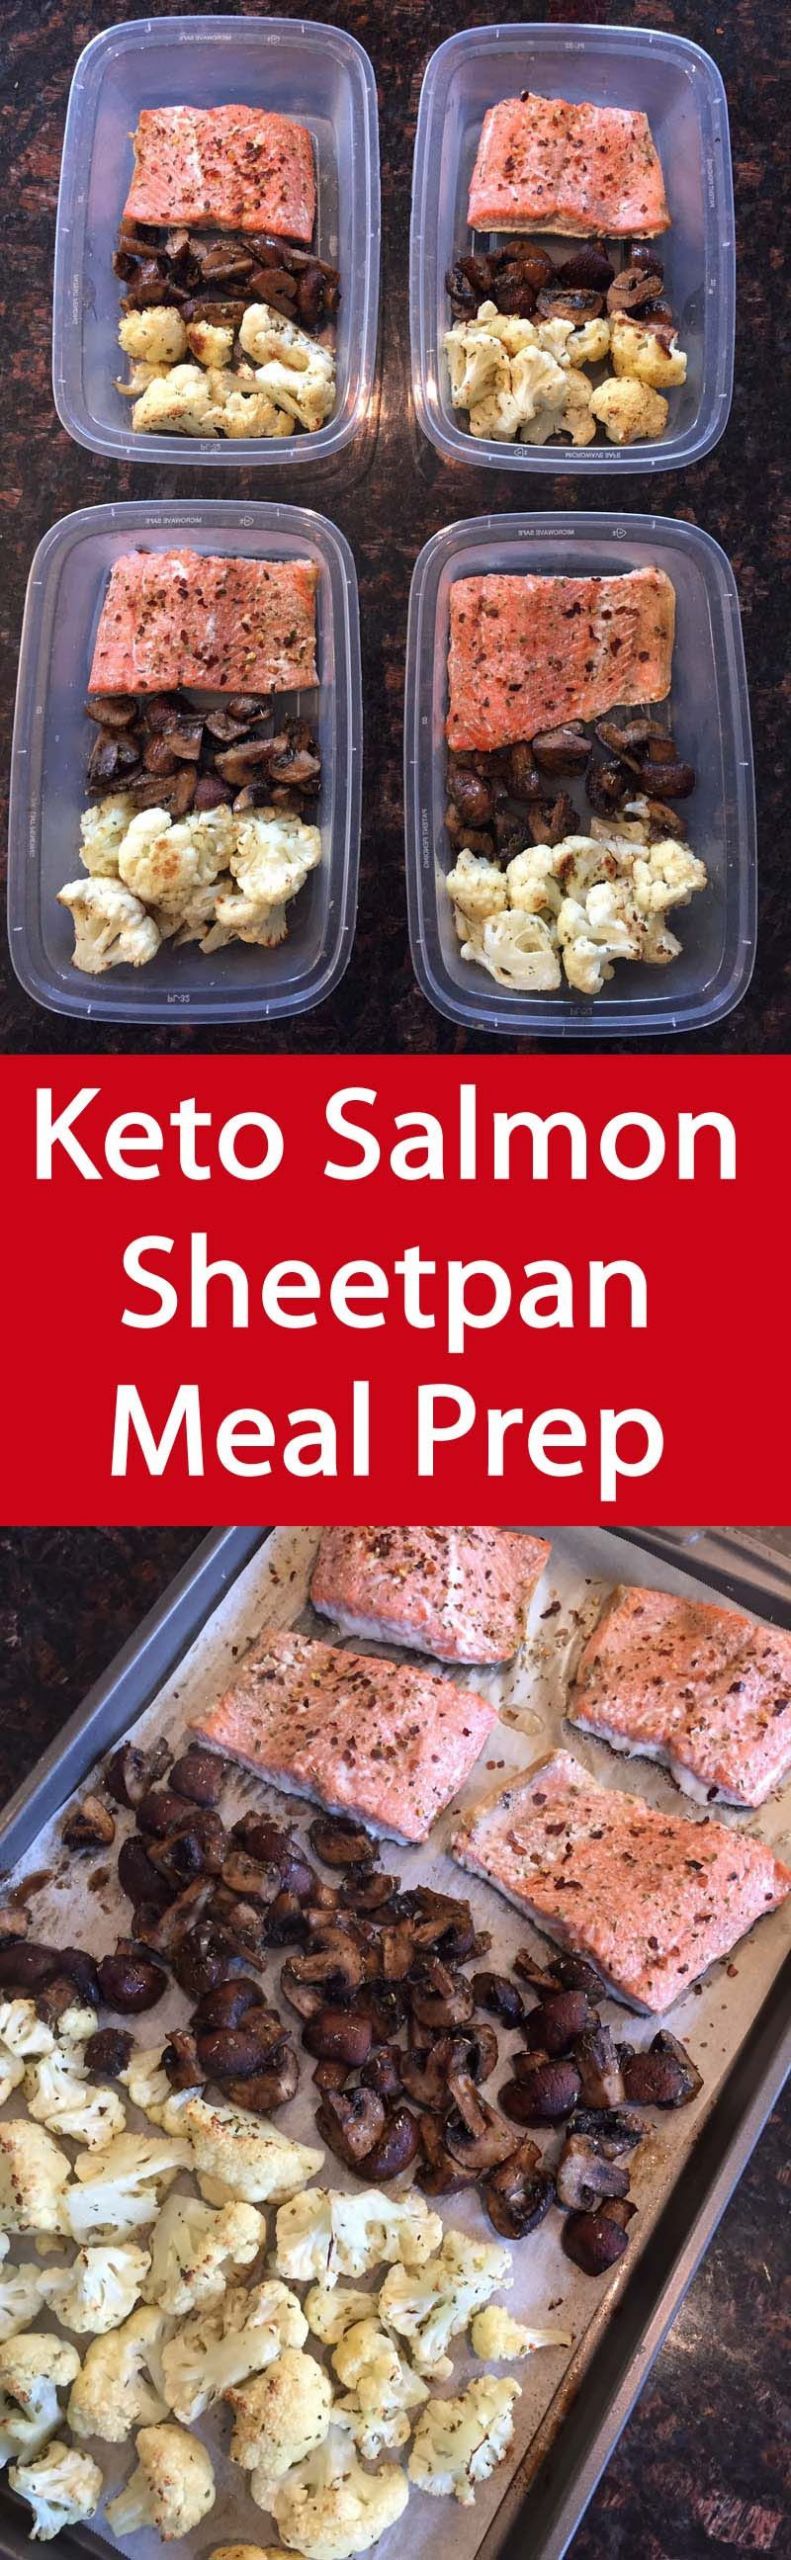 Salmon Keto Meal Prep Keto Salmon Sheet Pan Meal Prep Recipe